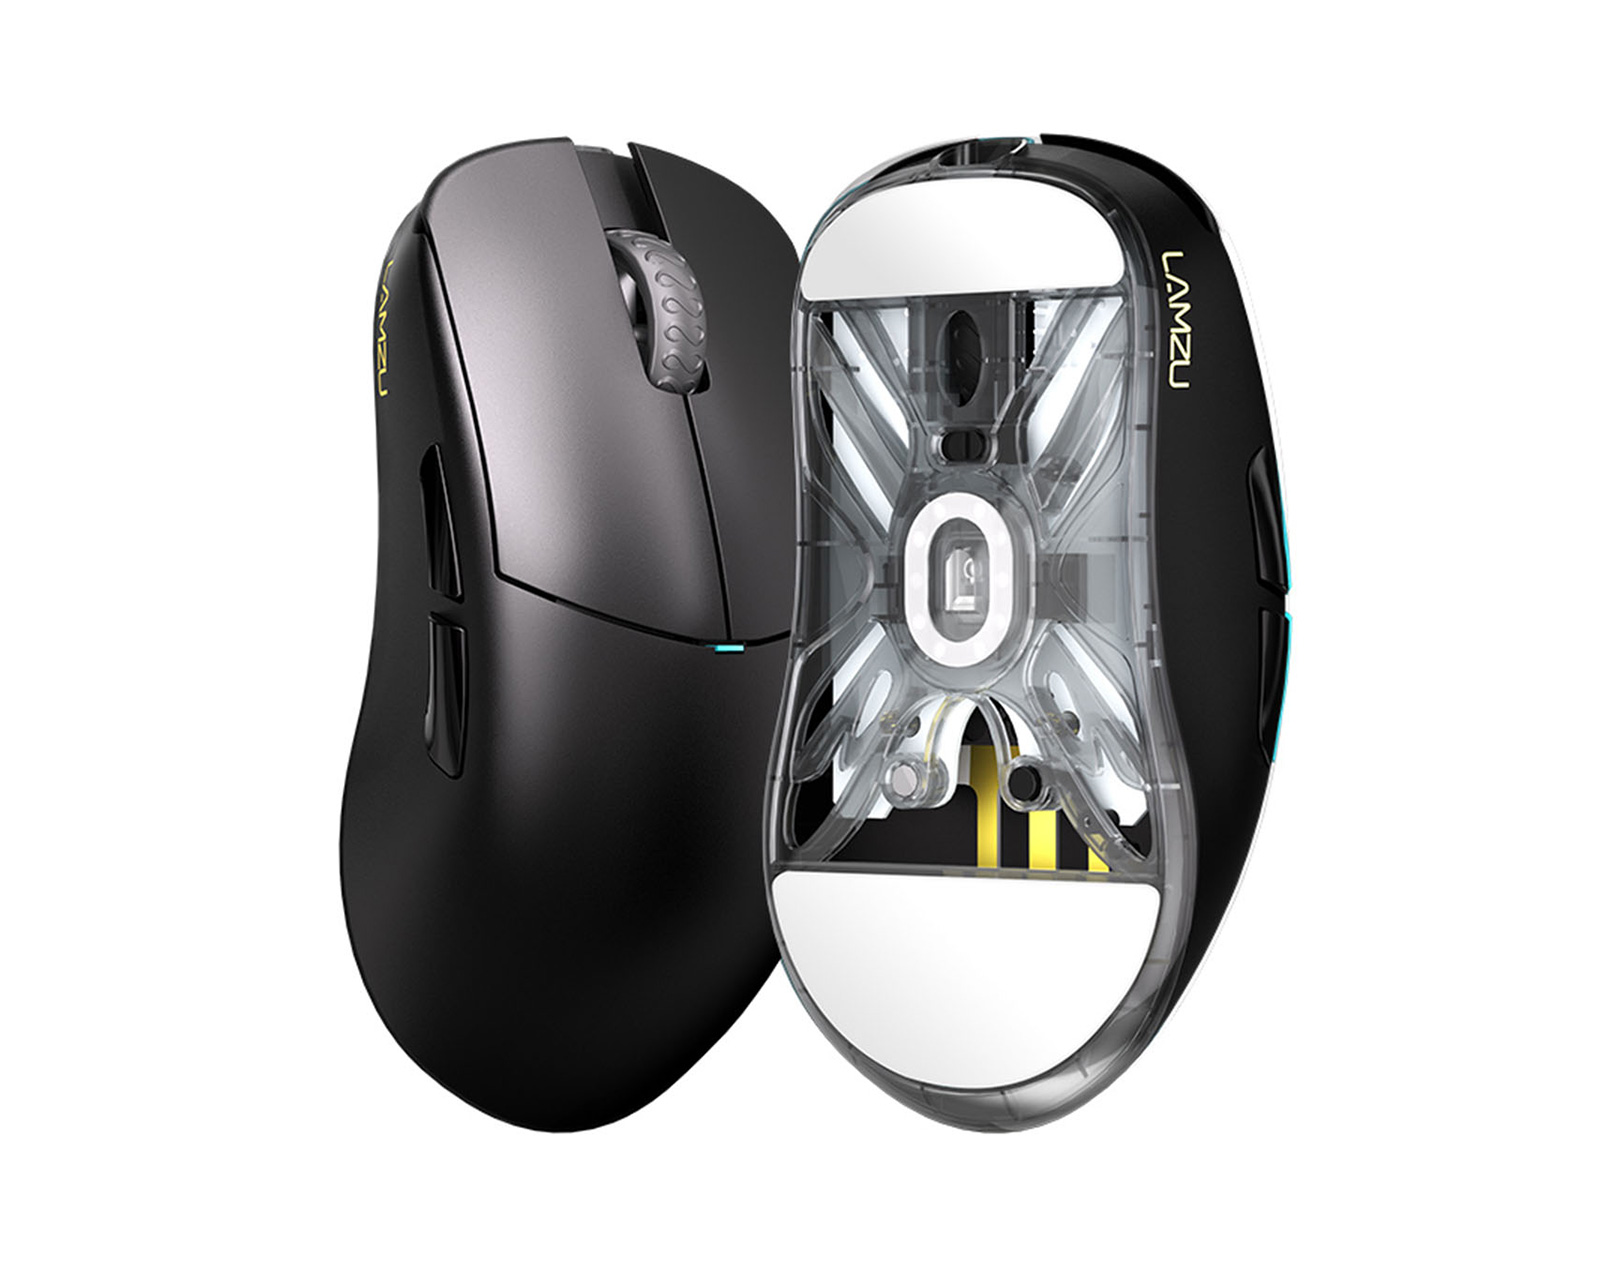 Lamzu Atlantis OG V2 Wireless Superlight Gaming Mouse - Black - us